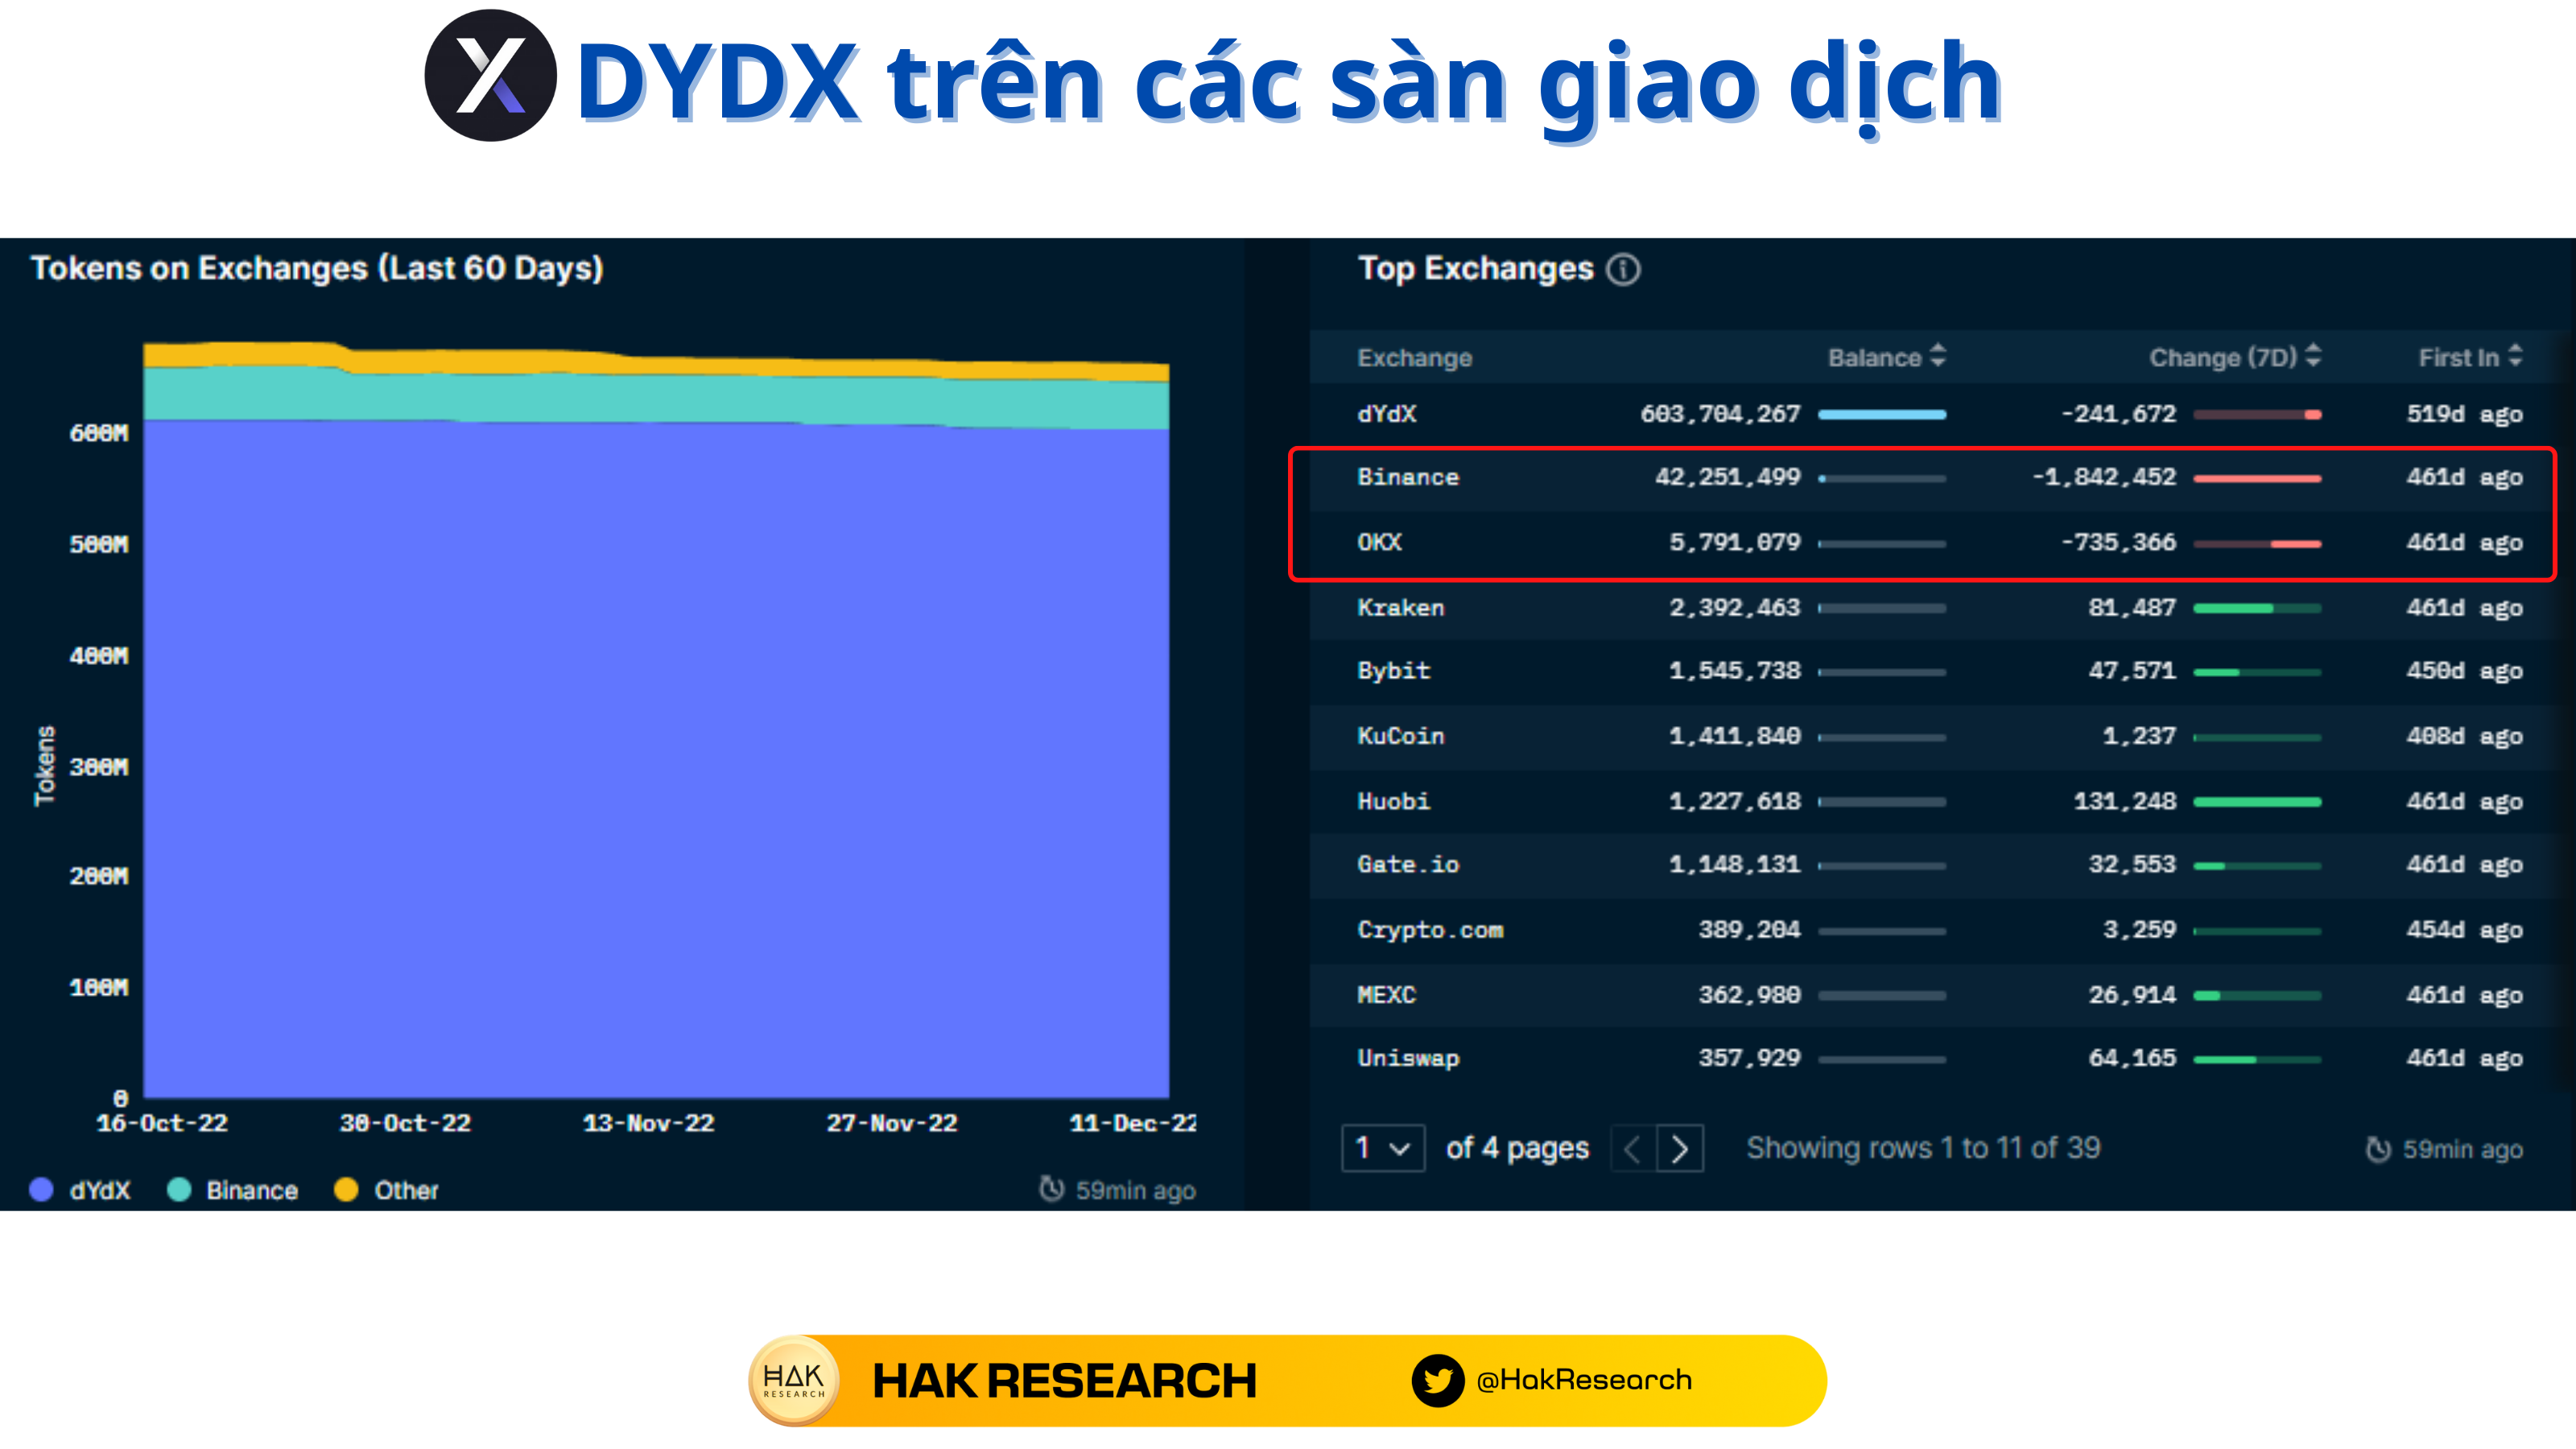 DYDX trên các sàn giao dịch